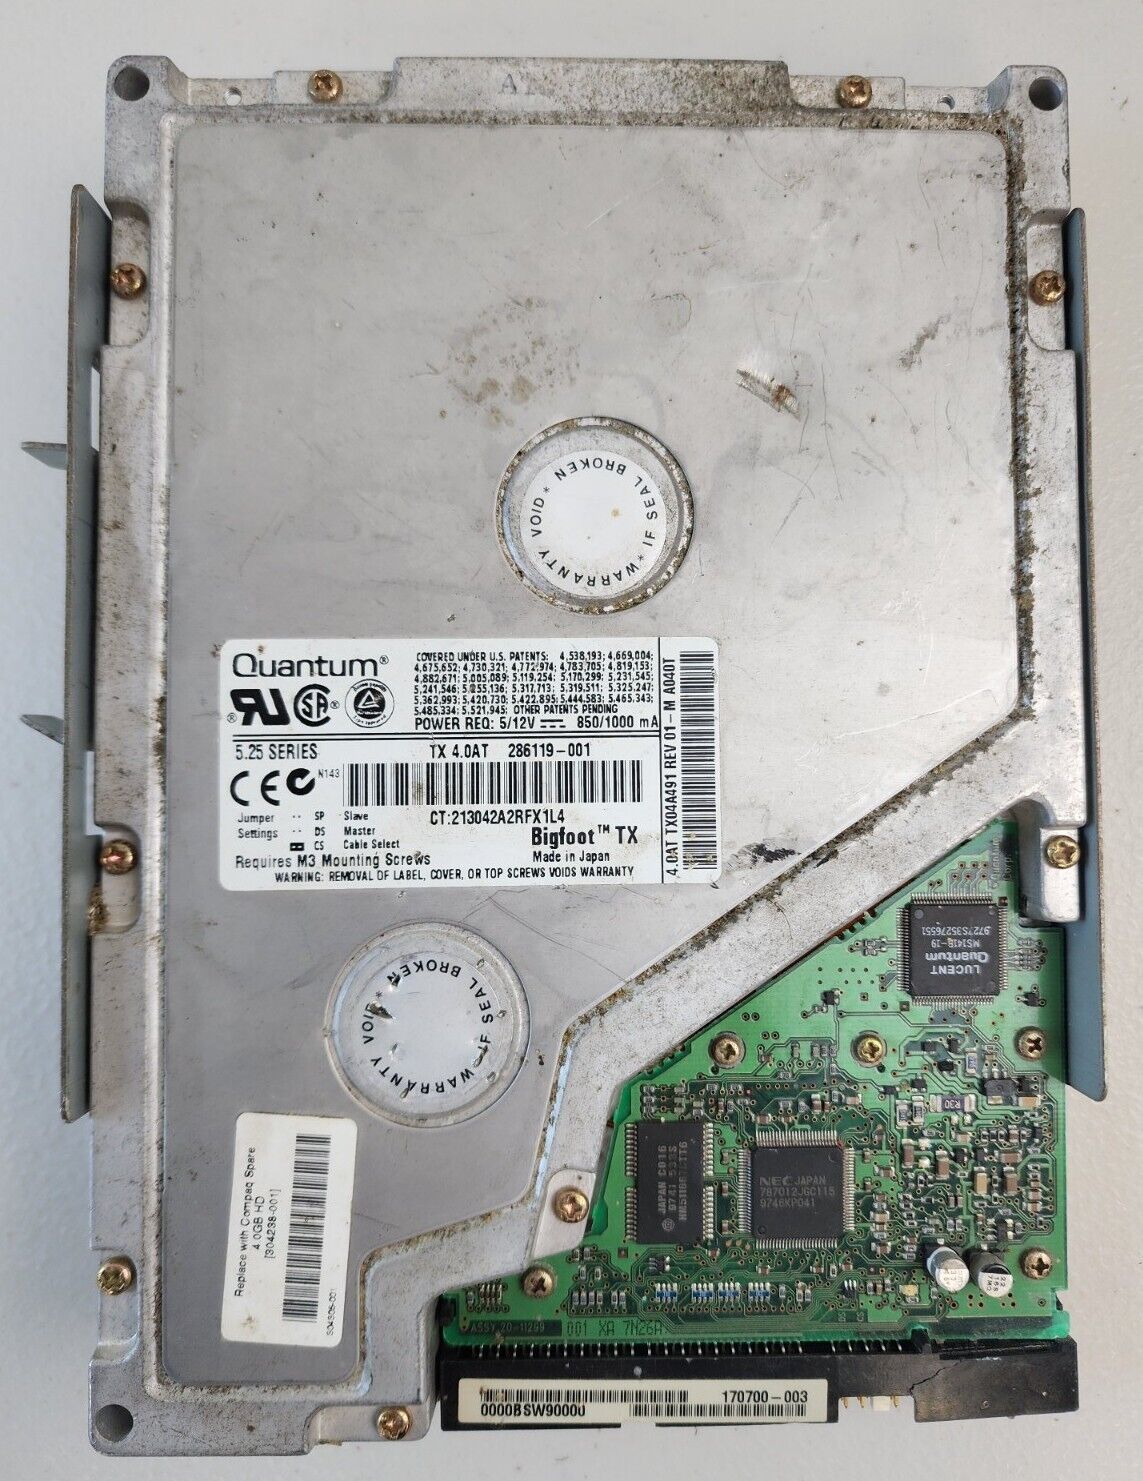 Quantum Bigfoot TX 4.0AT 4GB 4000RPM 5.25 Series IDE Internal Hard Drive